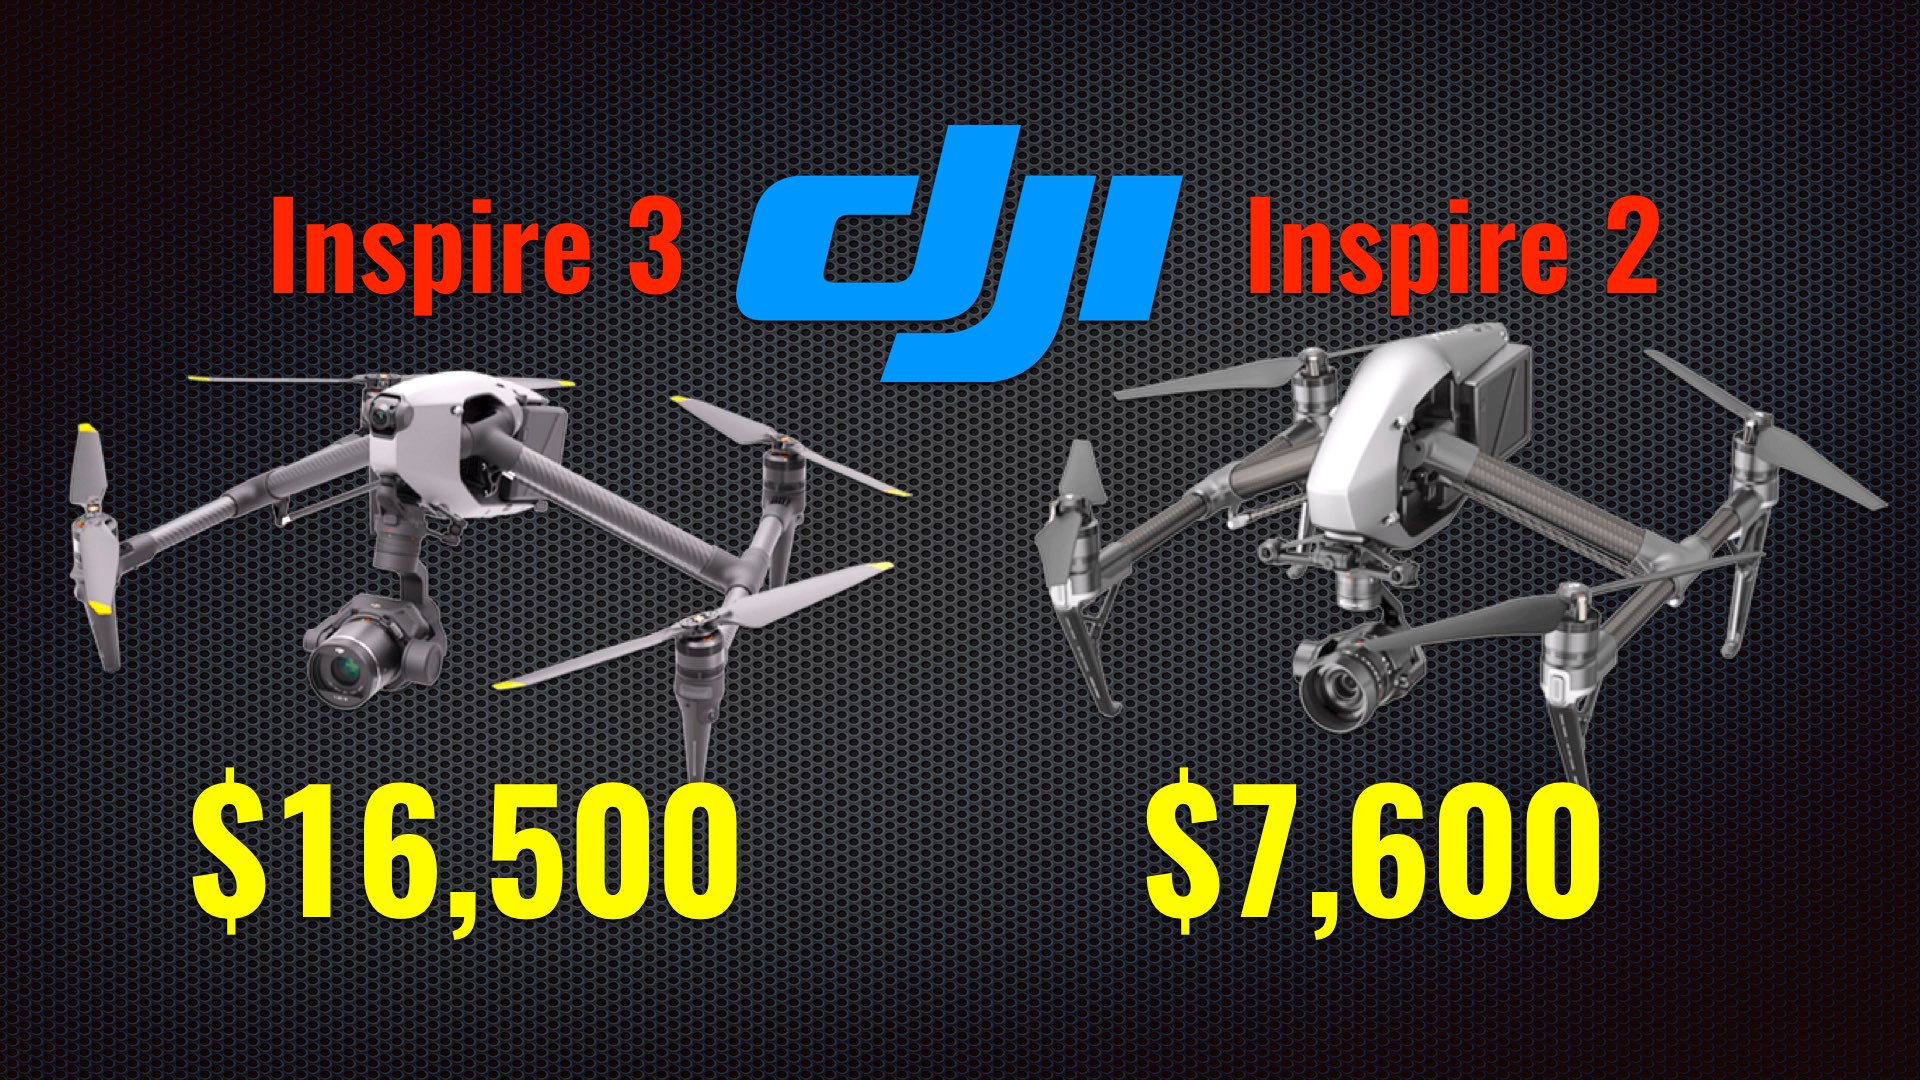 DJI Inspire 3 vs DJI Inspire 2 – heliguy™